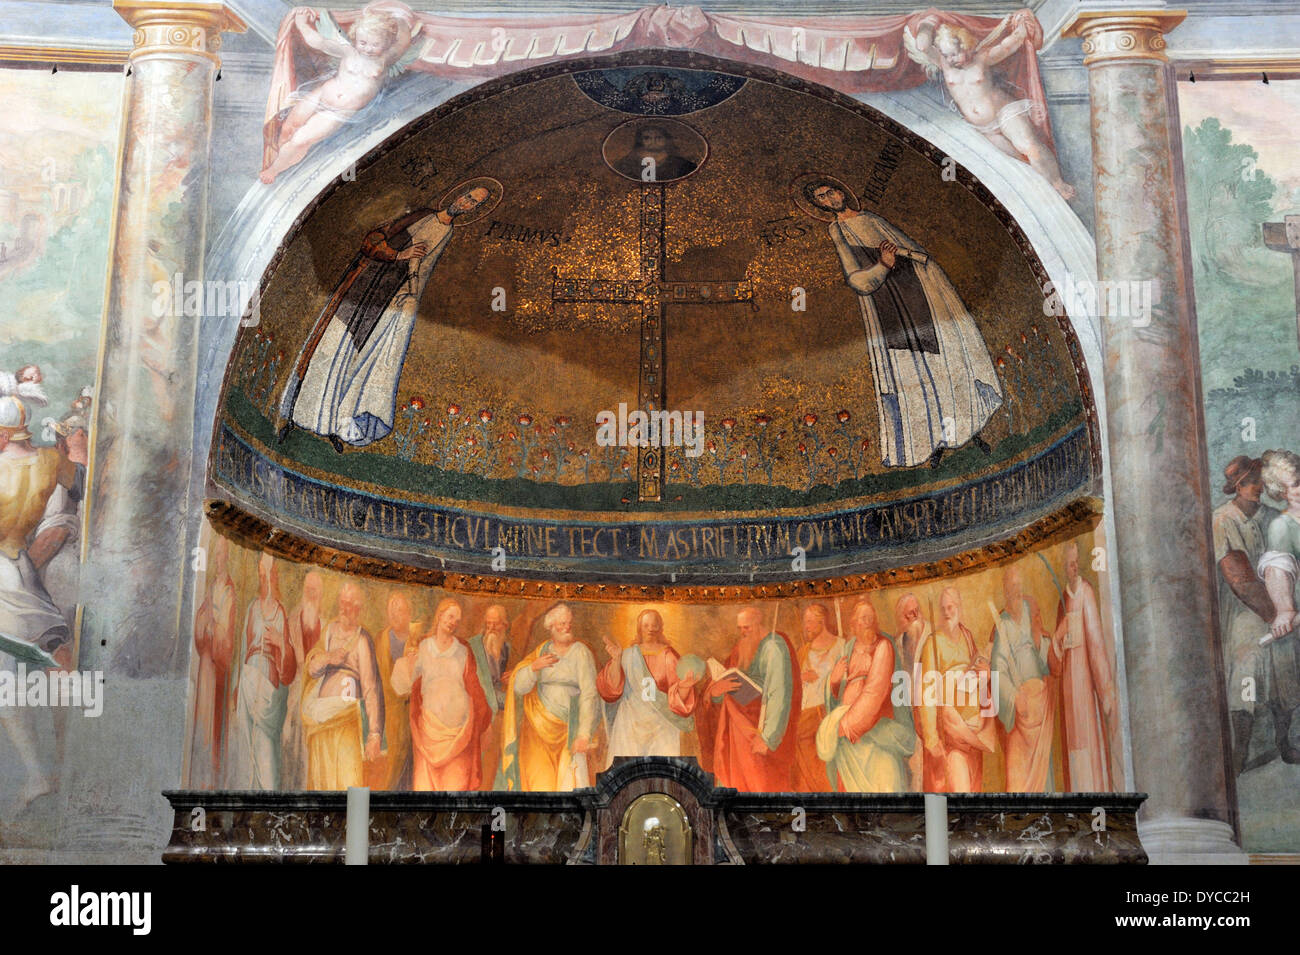 Italie, Rome, Celio, église de Santo Stefano Rotondo, Mosaico dei Santi Primo e Feliciano, mosaïque chrétienne précoce (7ème siècle) Banque D'Images